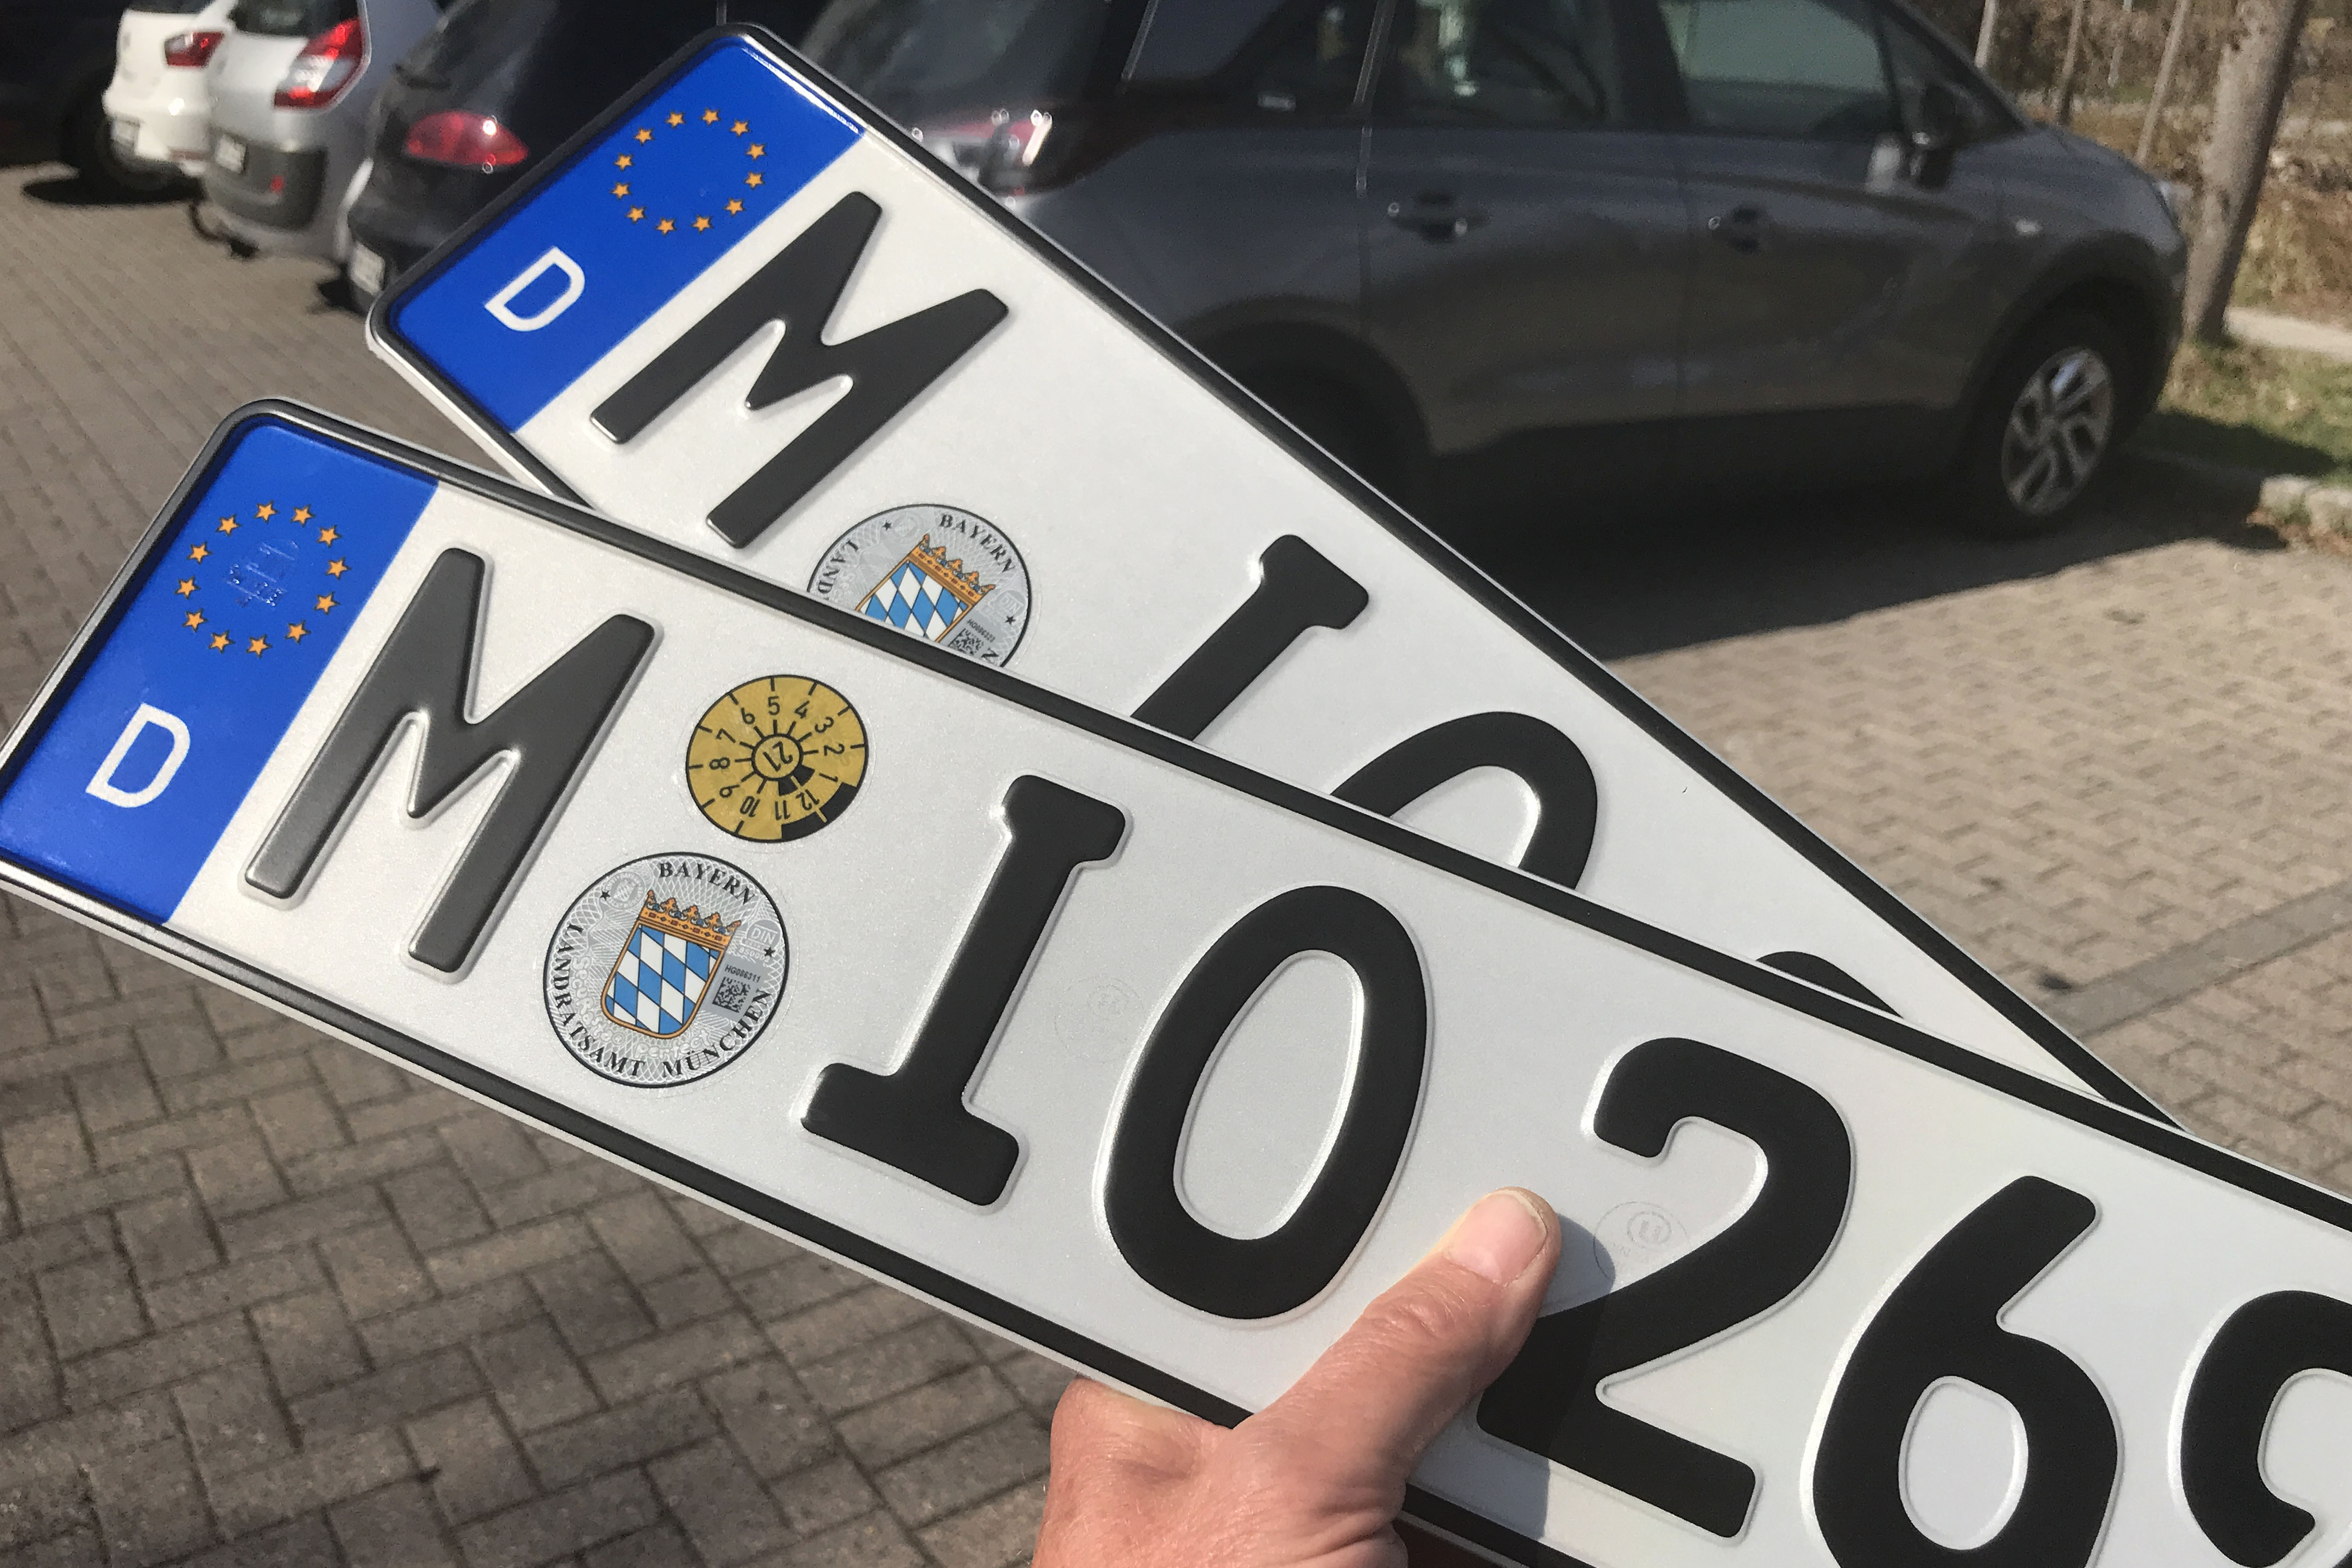 München: MUC als neues Autokennzeichen geplant - wer es nutzen